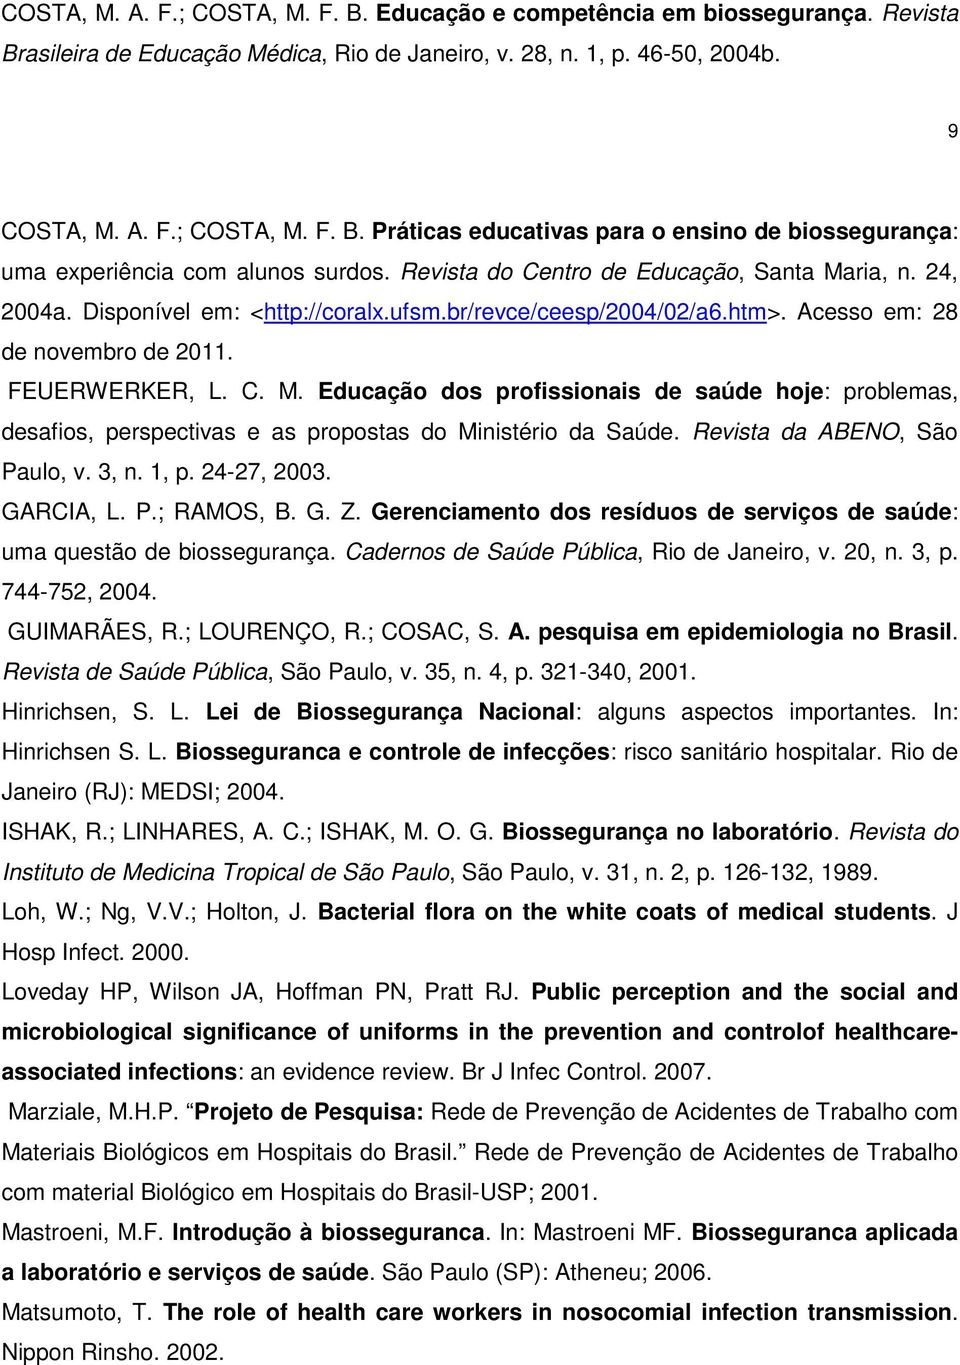 Revista da ABENO, São Paulo, v. 3, n. 1, p. 24-27, 2003. GARCIA, L. P.; RAMOS, B. G. Z. Gerenciamento dos resíduos de serviços de saúde: uma questão de biossegurança.